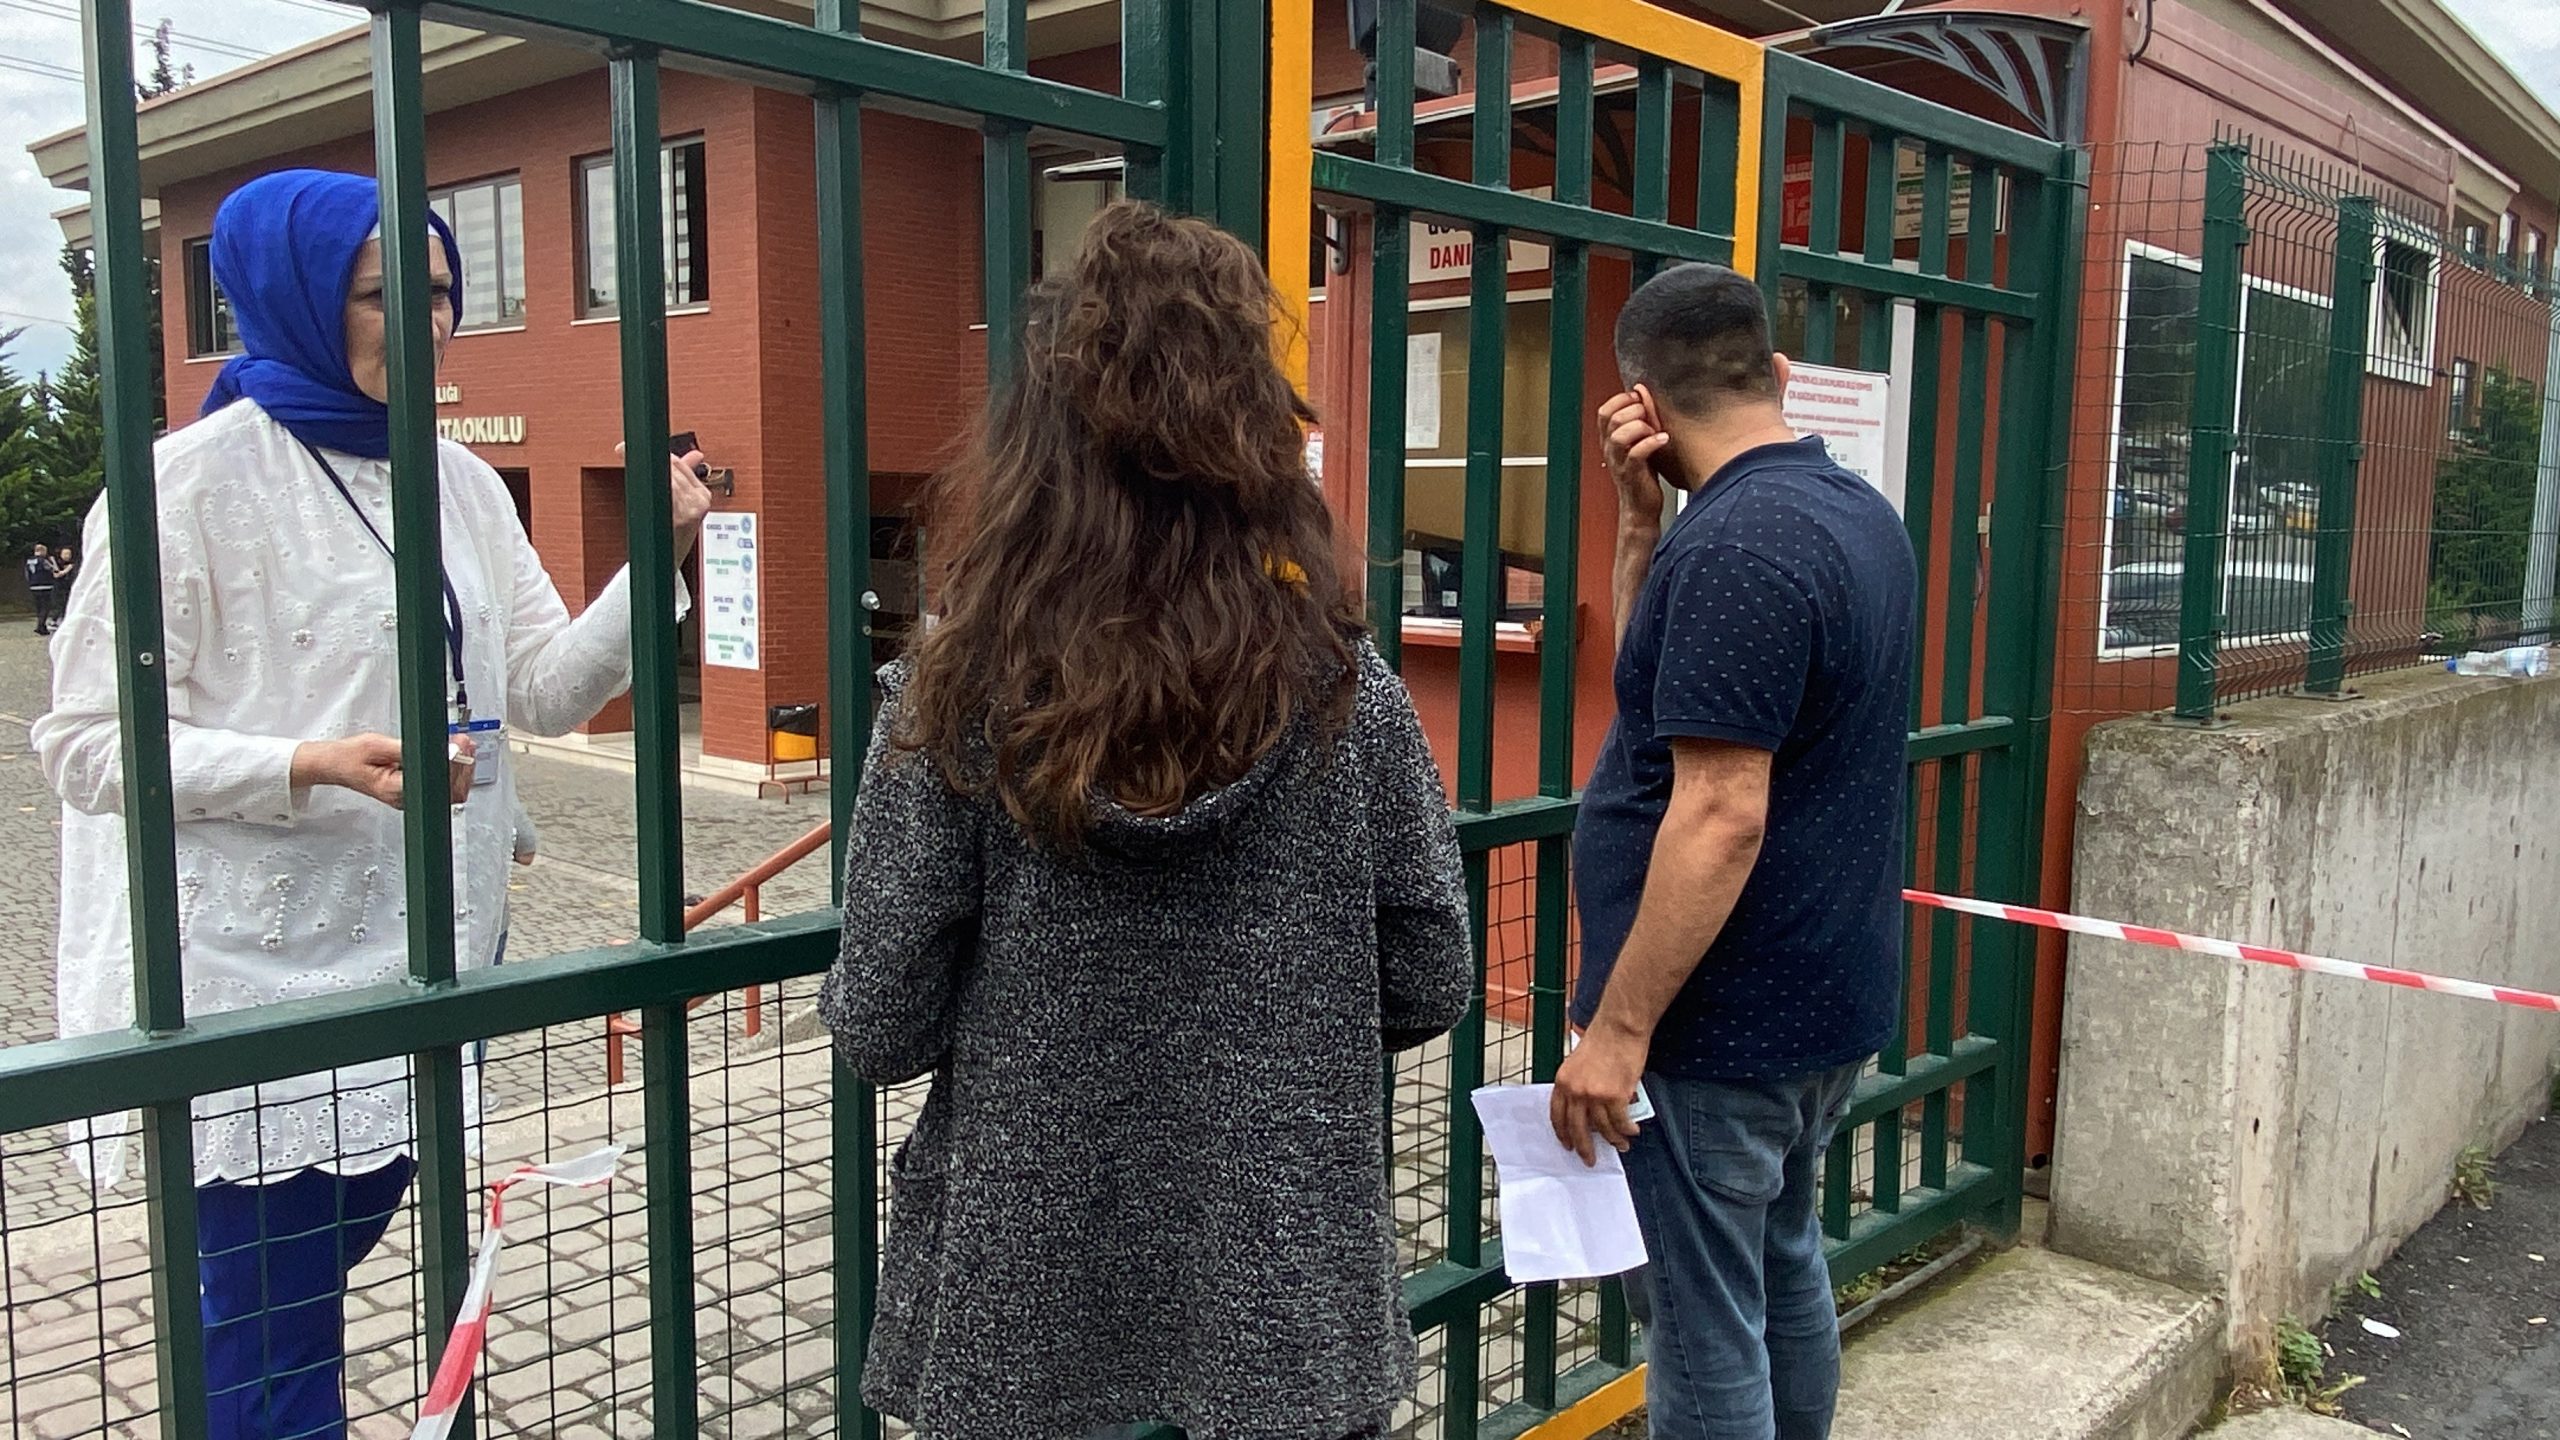 Okul Binasına 1 Dakika Geç Kaldığı İçin Sınava Alınmadı